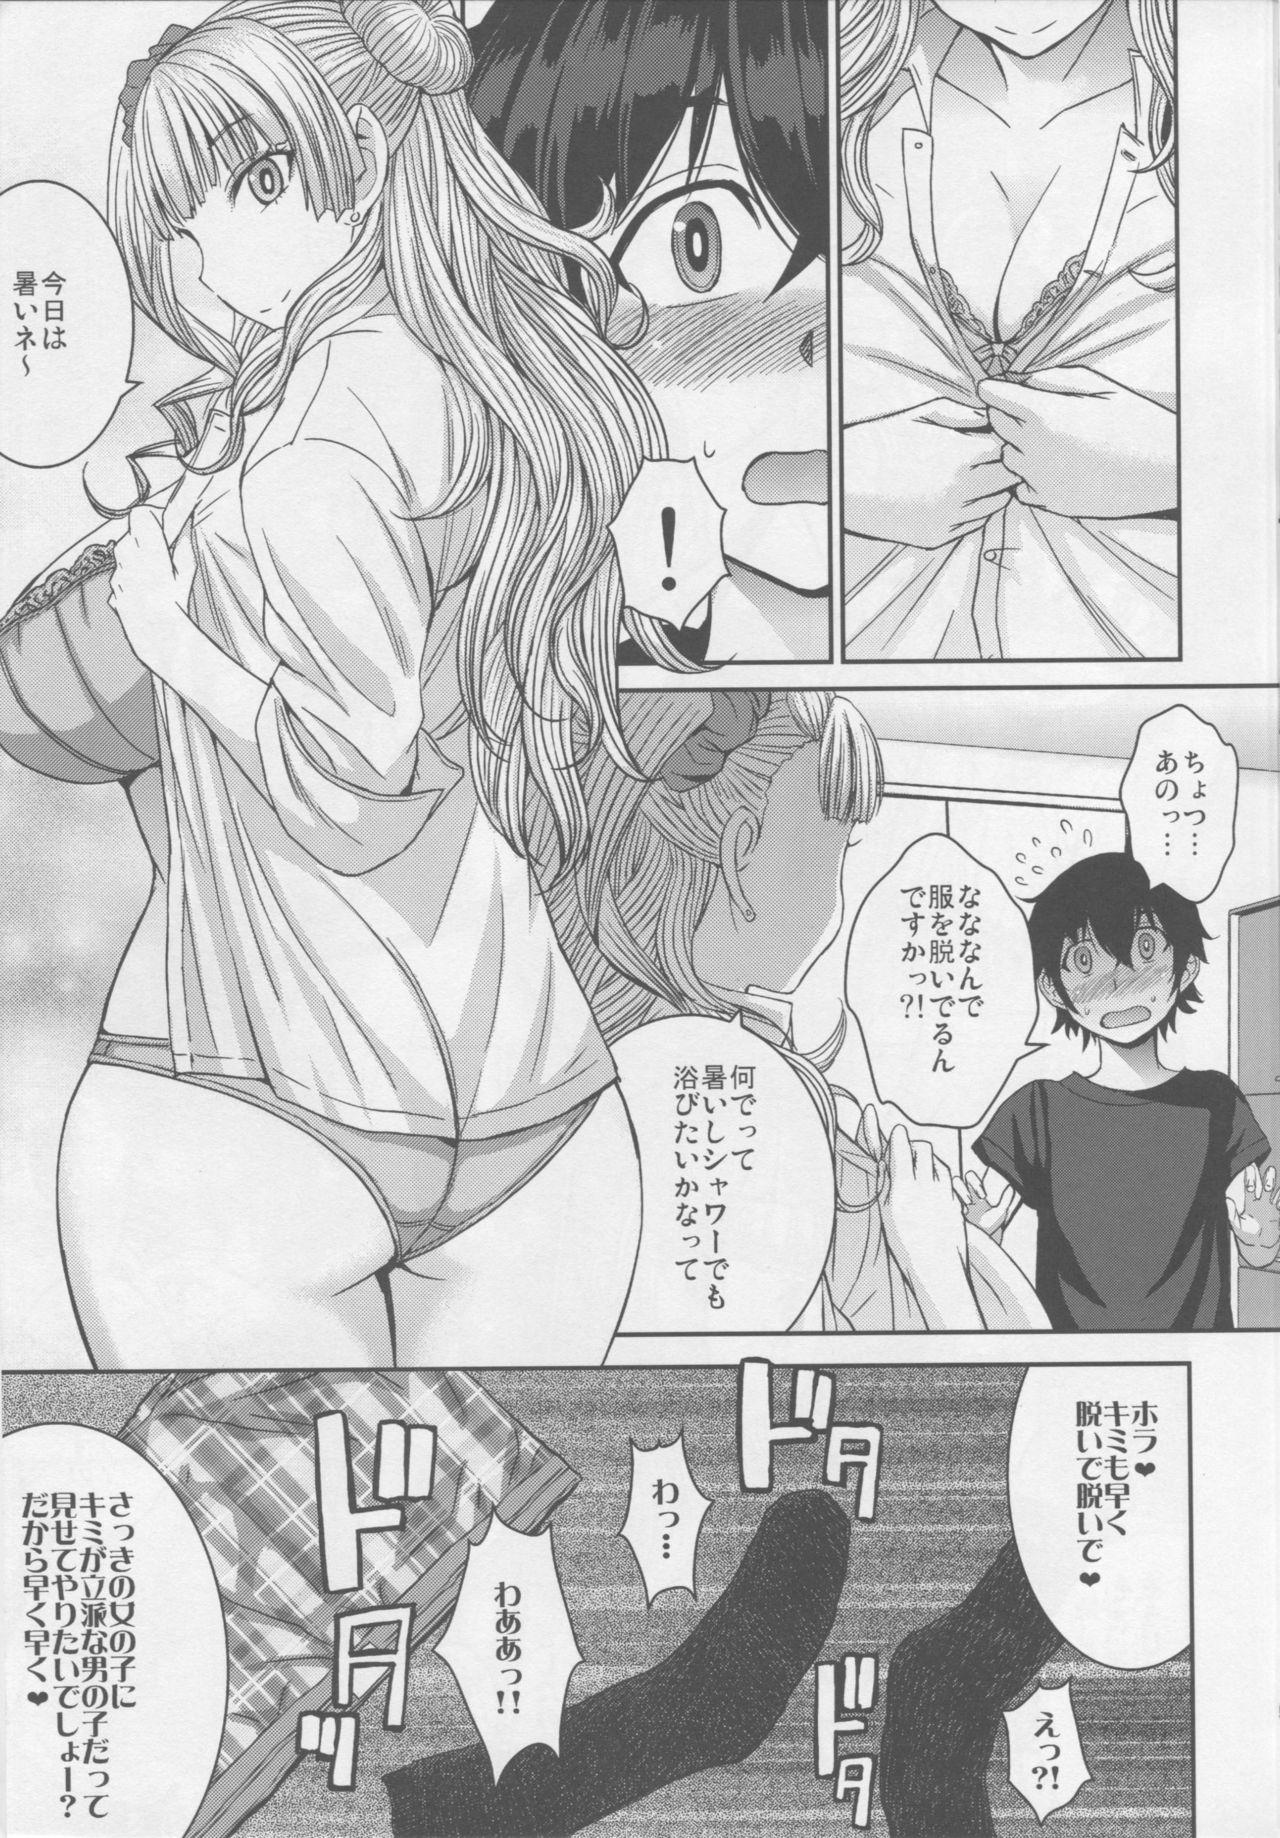 Cornudo Boy Meets Gal - Oshiete galko-chan Masturbando - Page 6